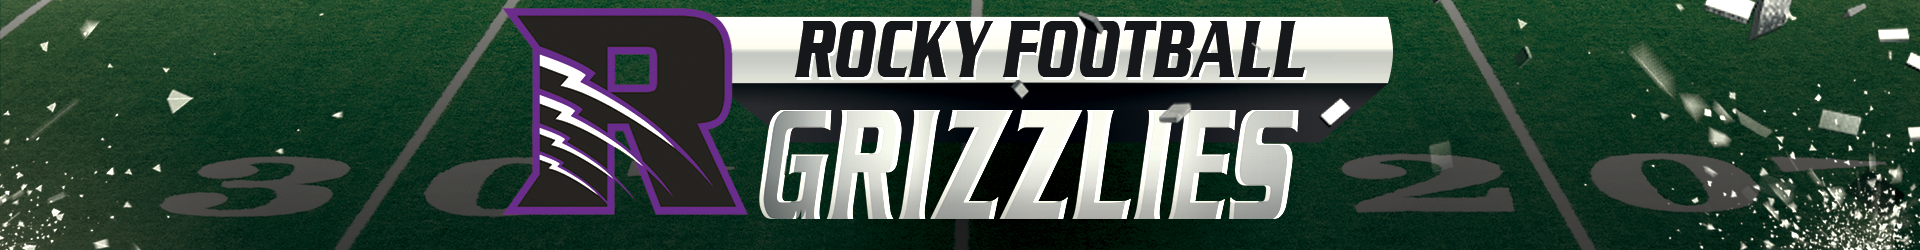 Rocky-Grizzlie-Banner